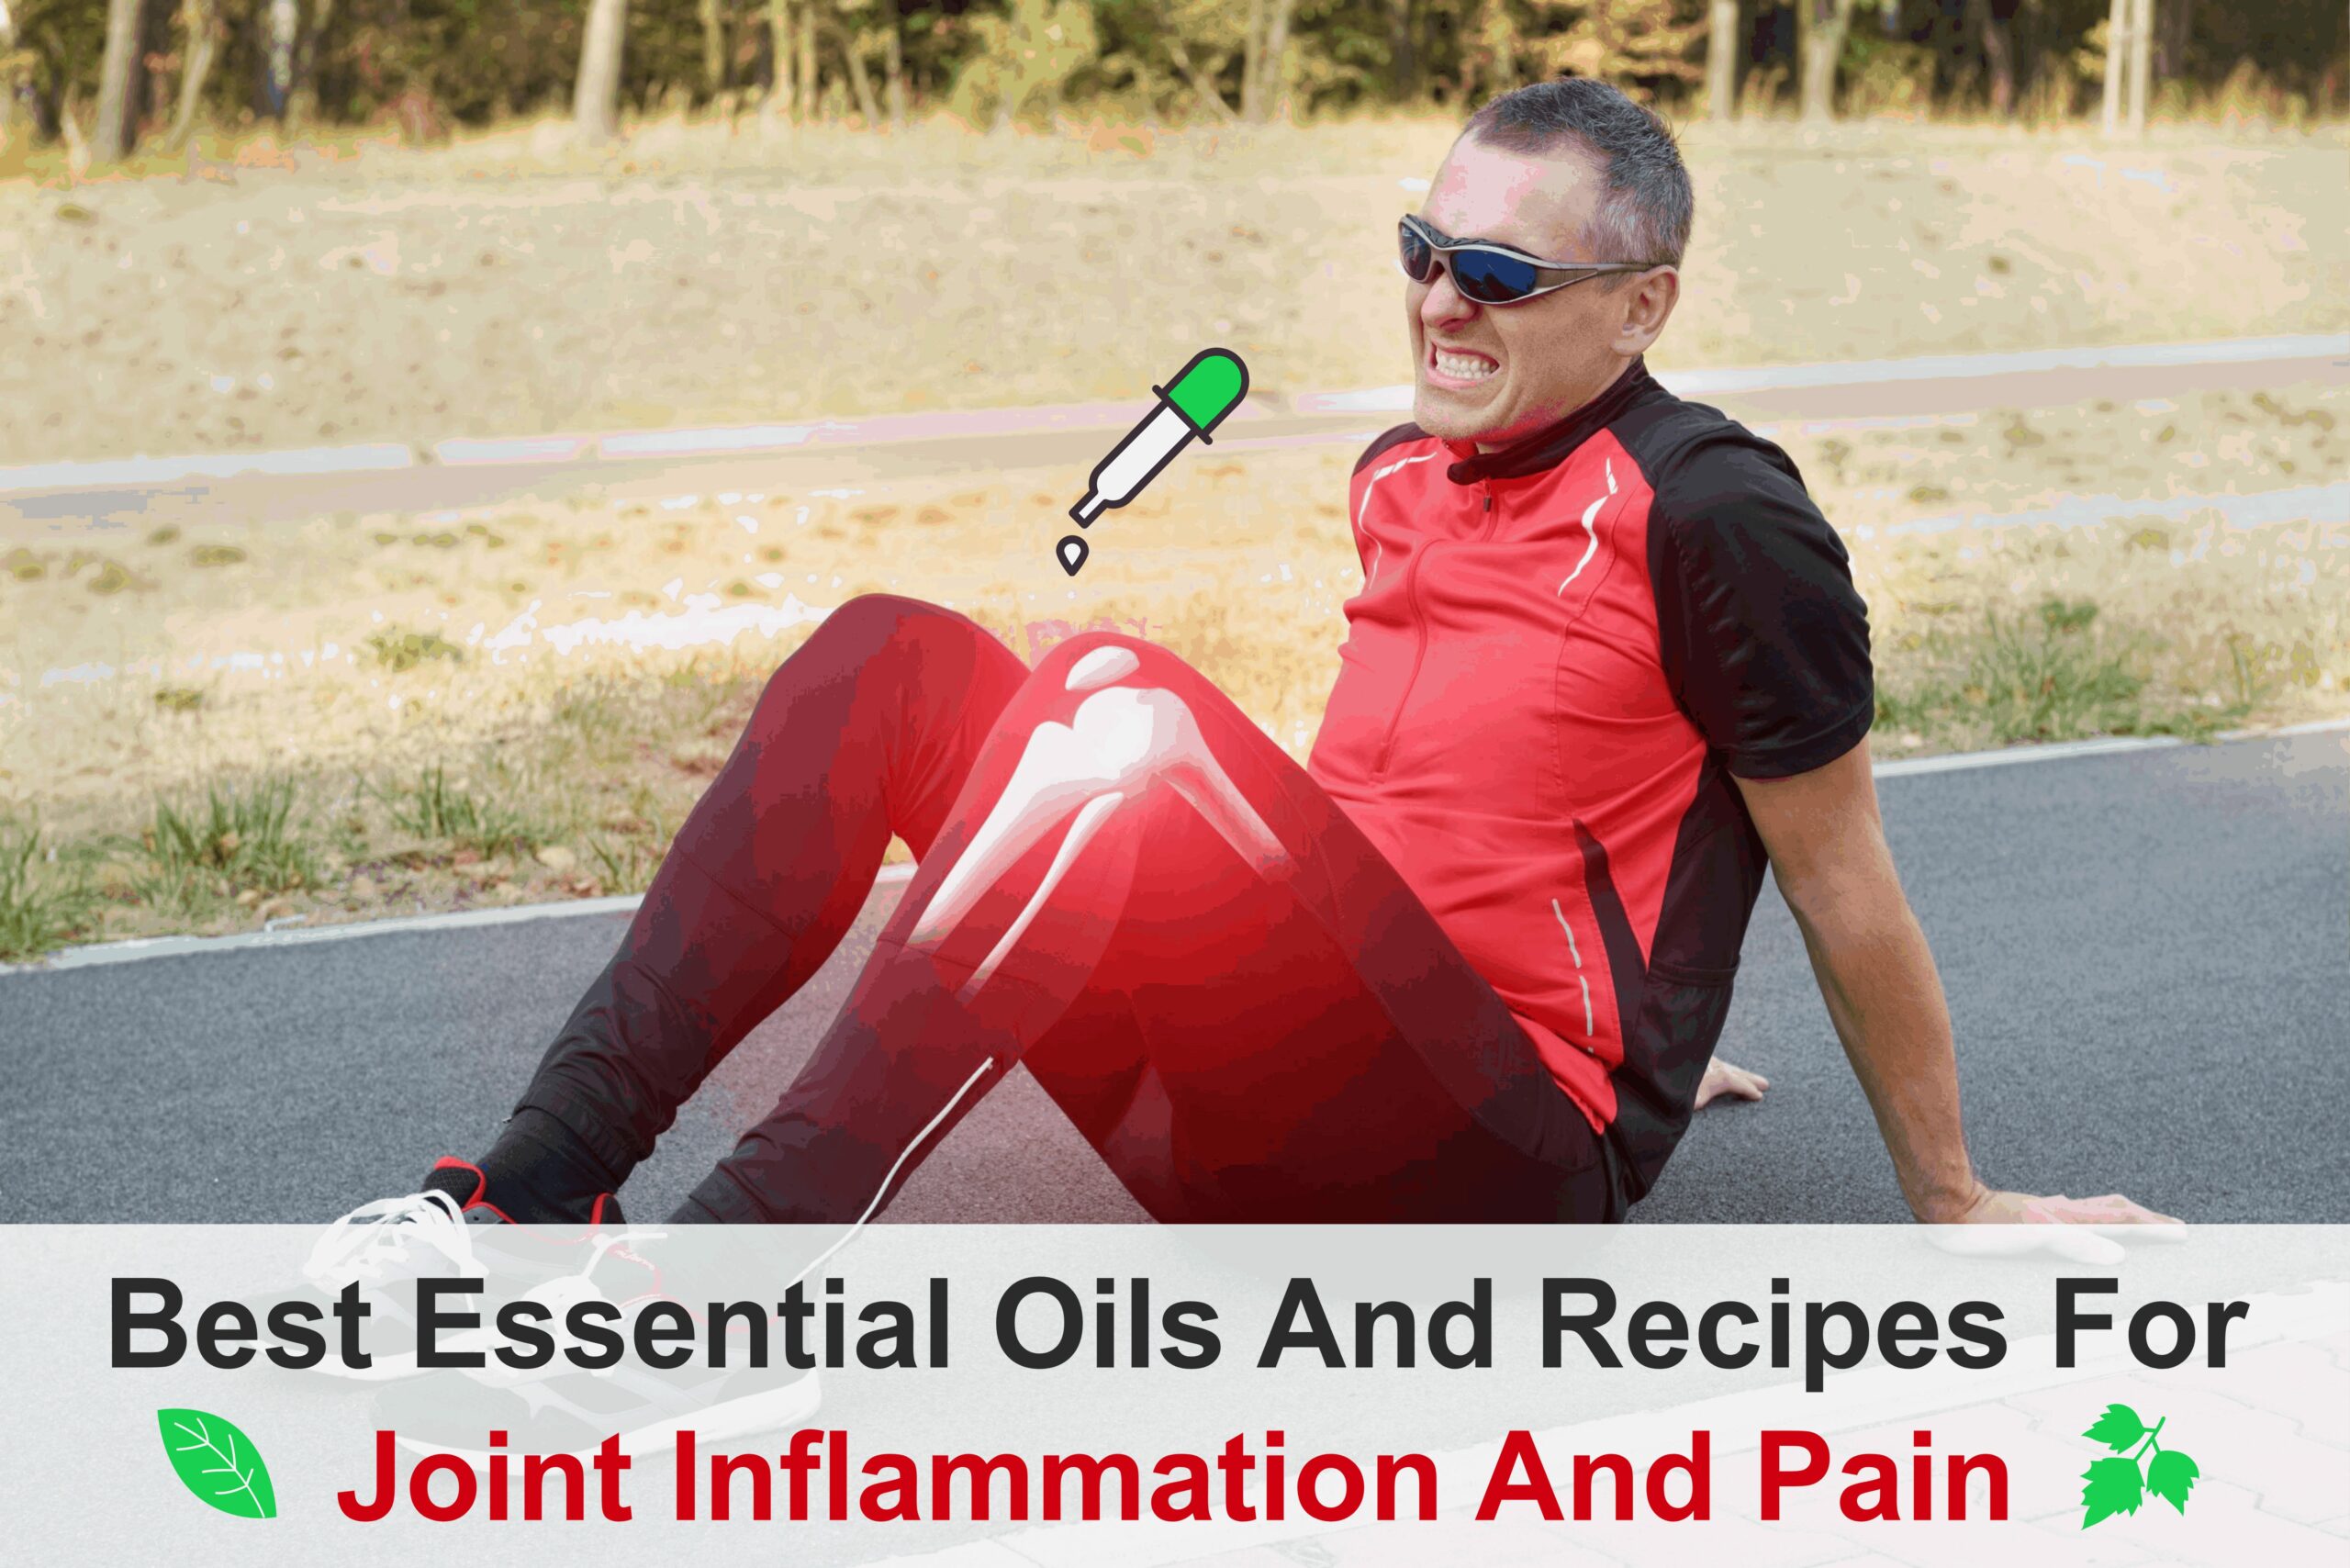 Lire la suite à propos de l’article Meilleures huiles essentielles et recettes pour l’inflammation et la douleur articulaires